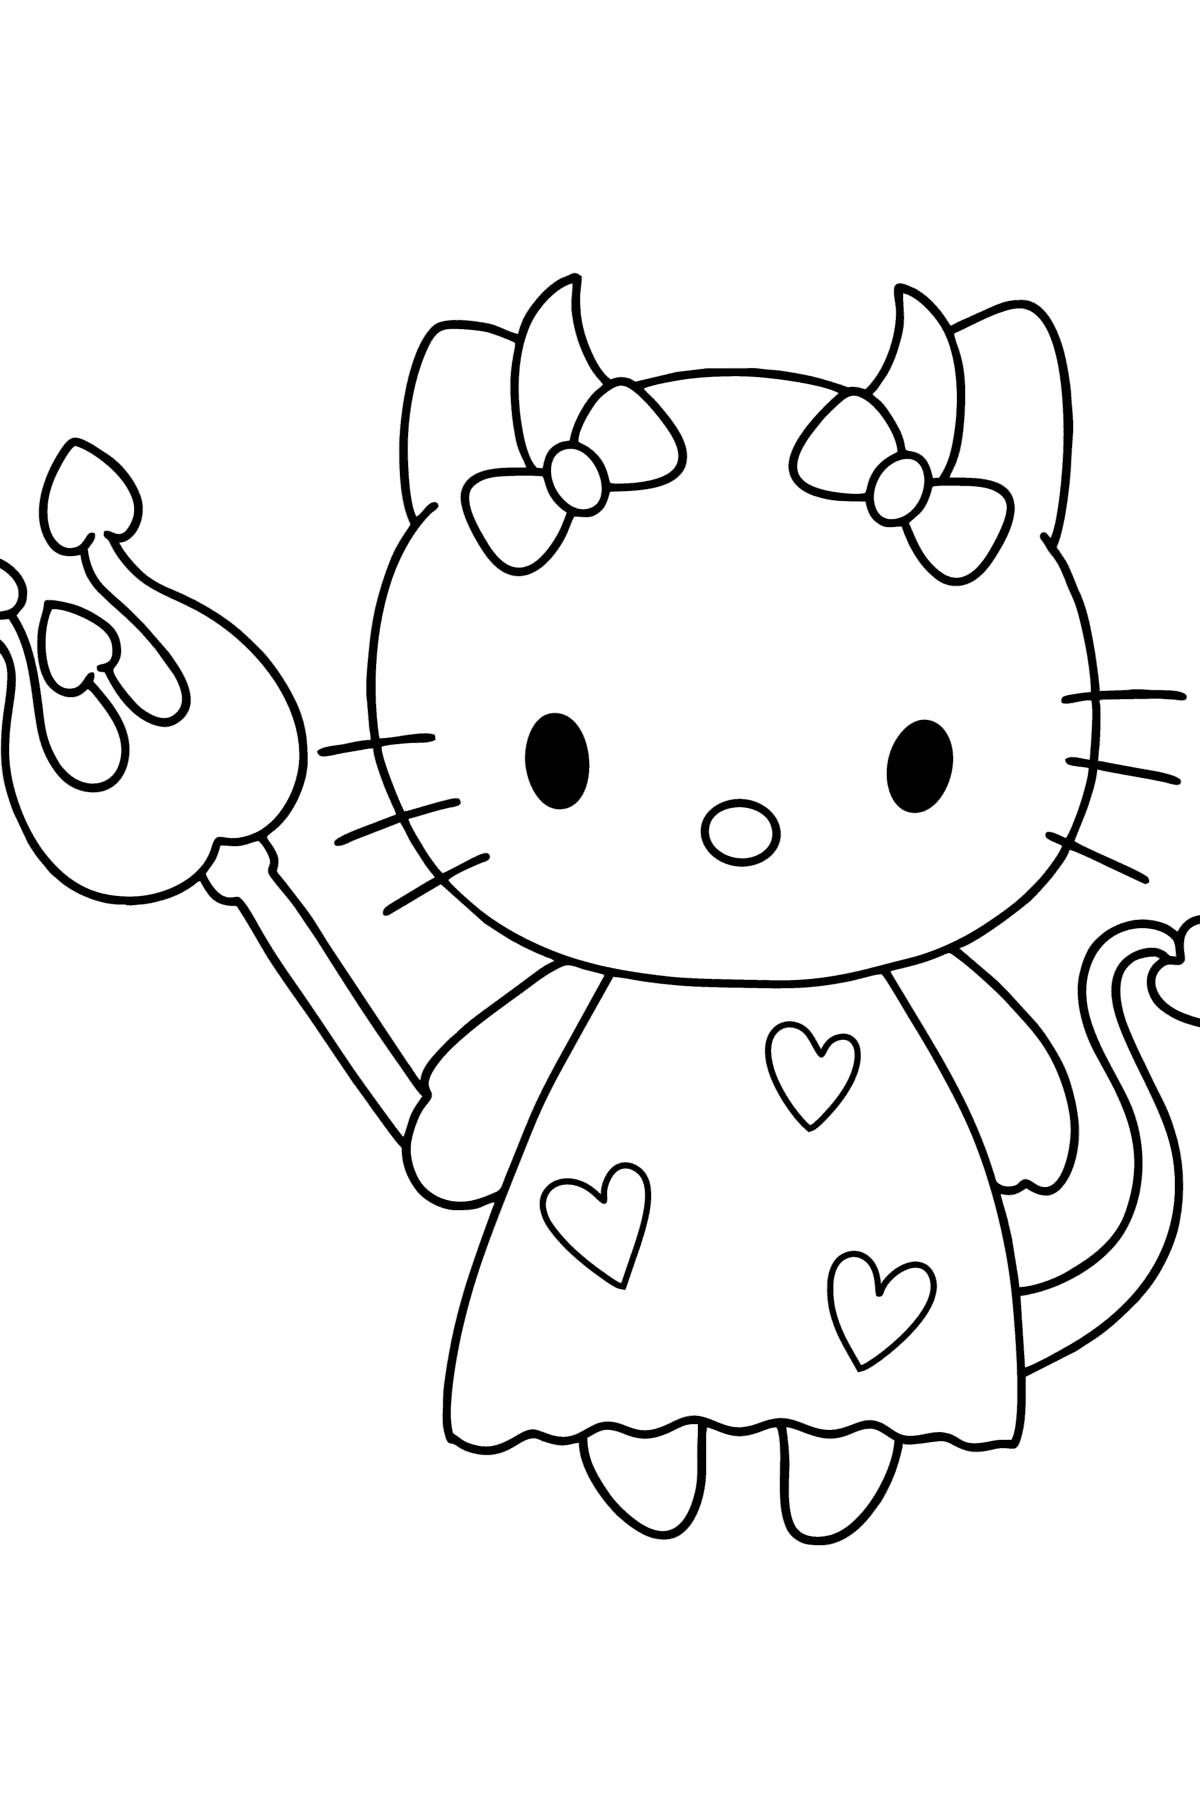 Tegning til fargelegging Hello Kitty djevel - Tegninger til fargelegging for barn